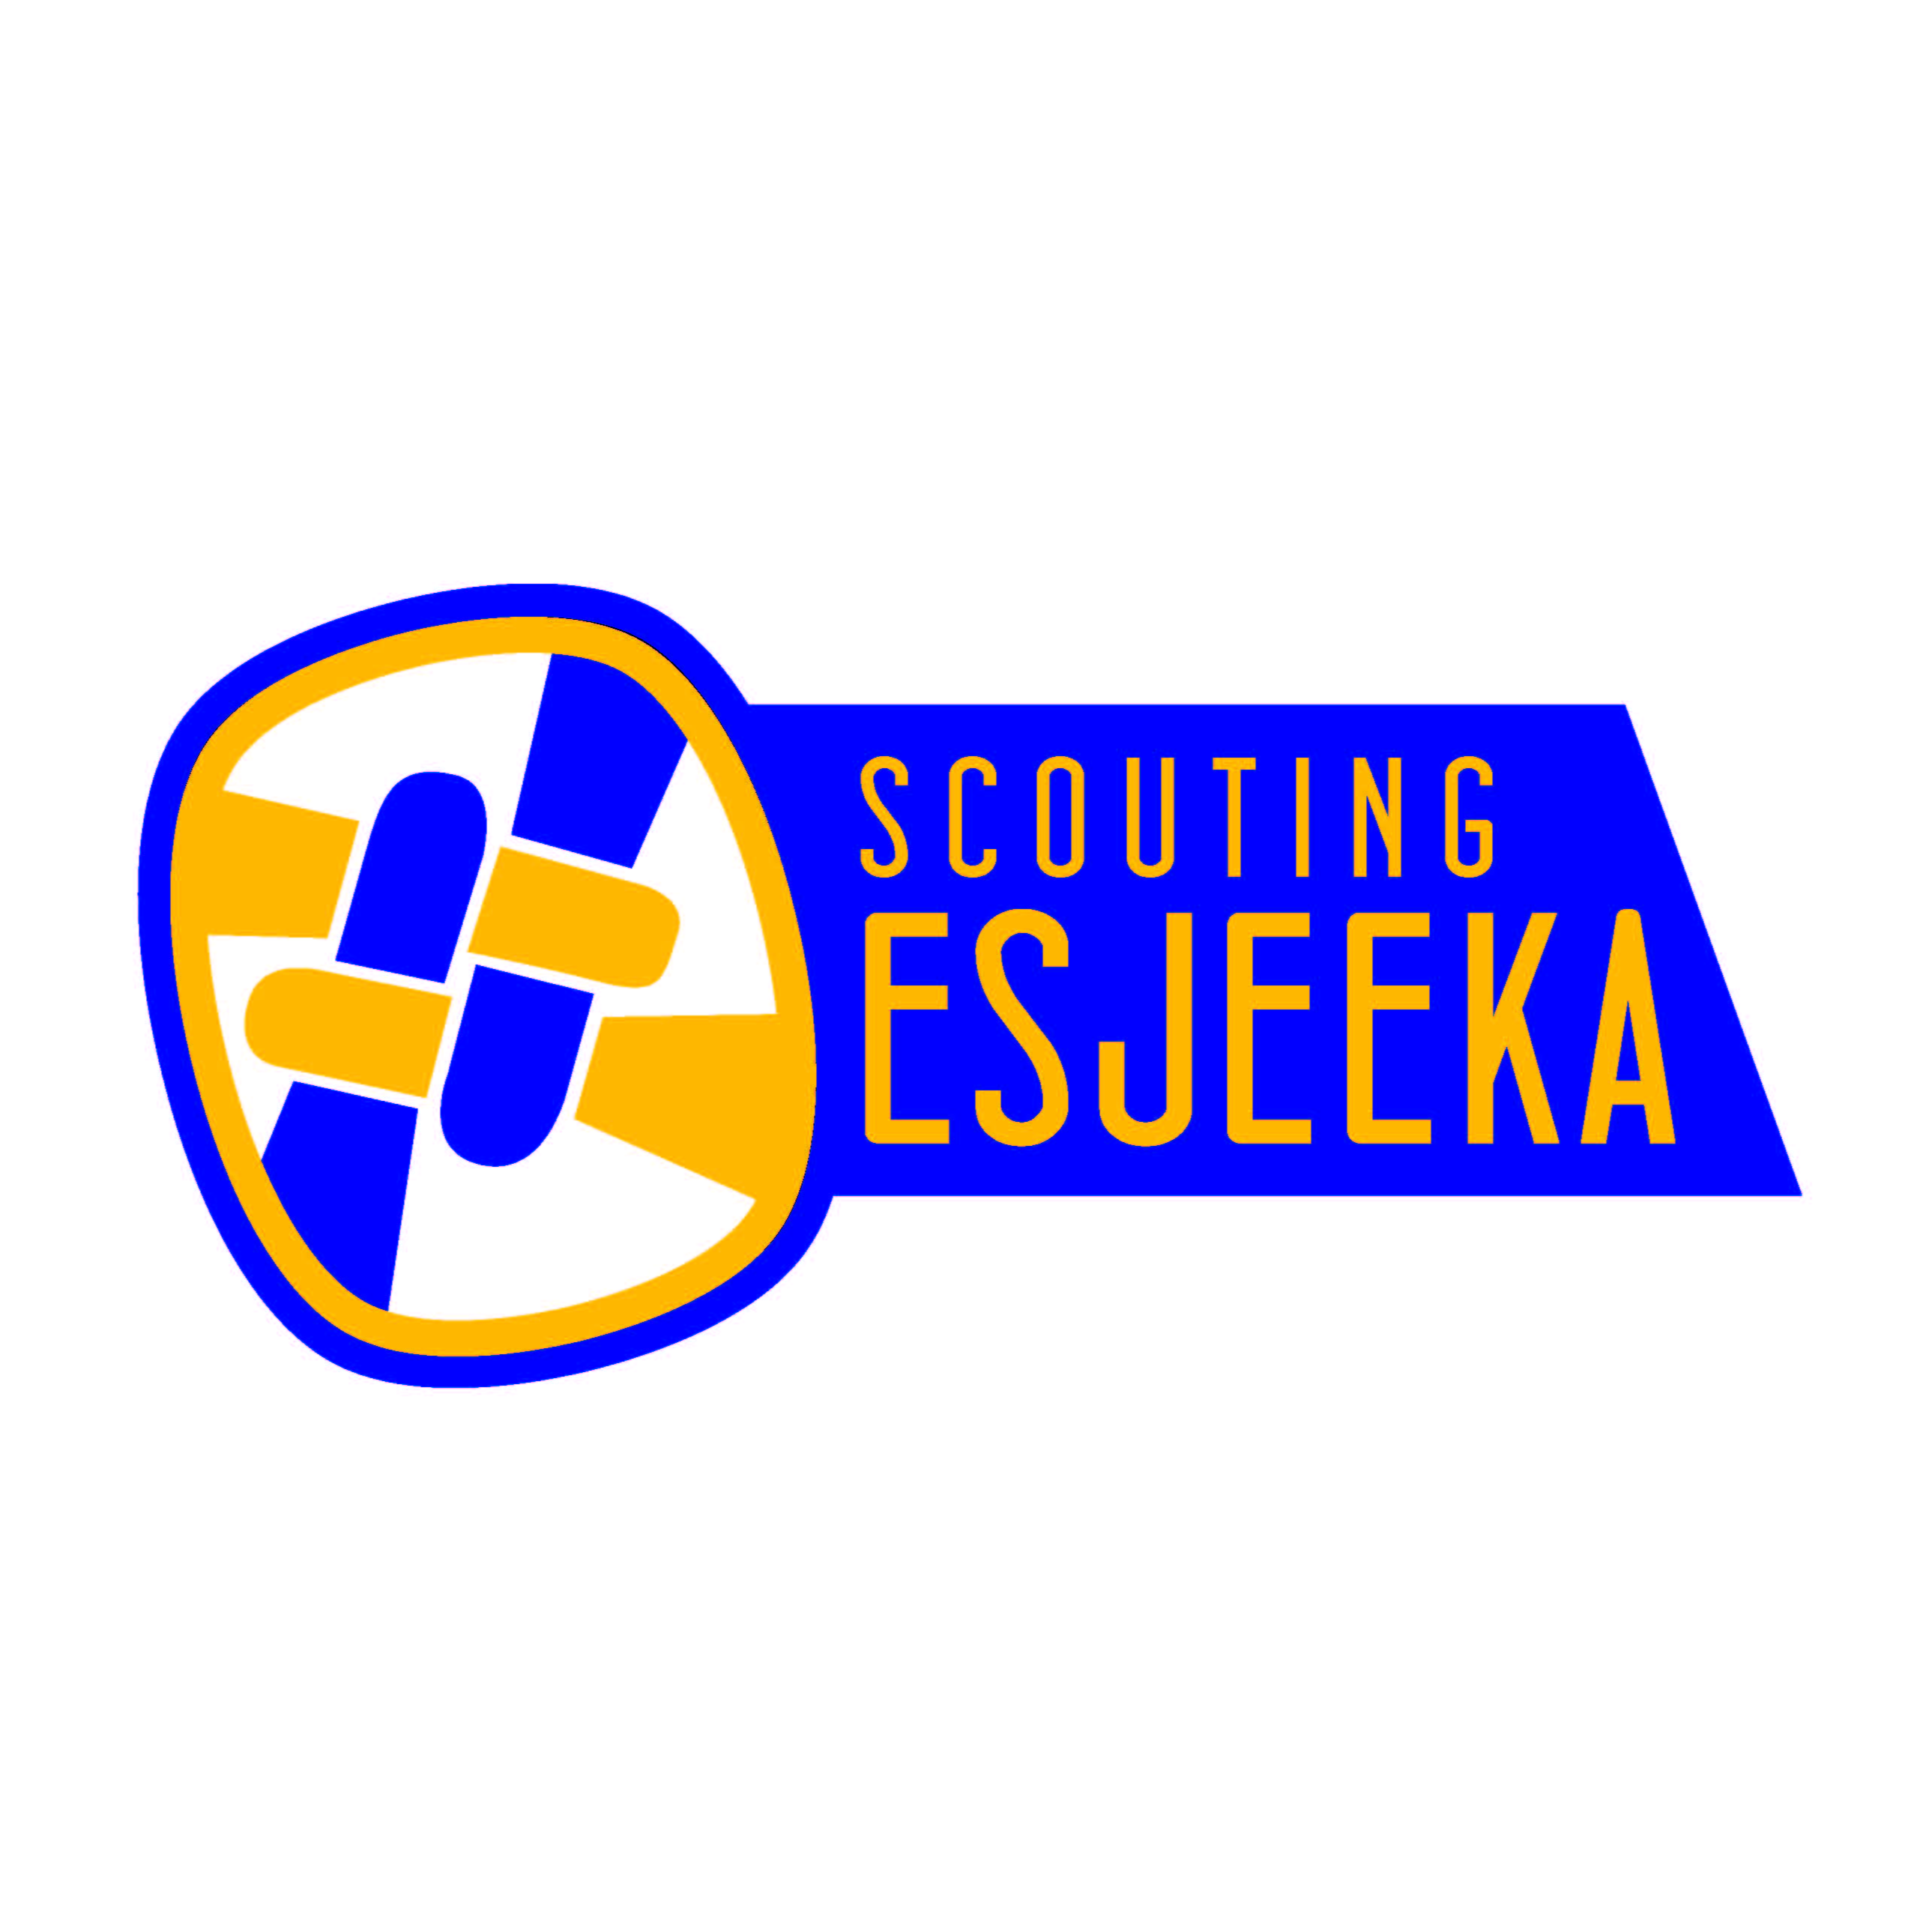 Stichting Scouting Esjeeka